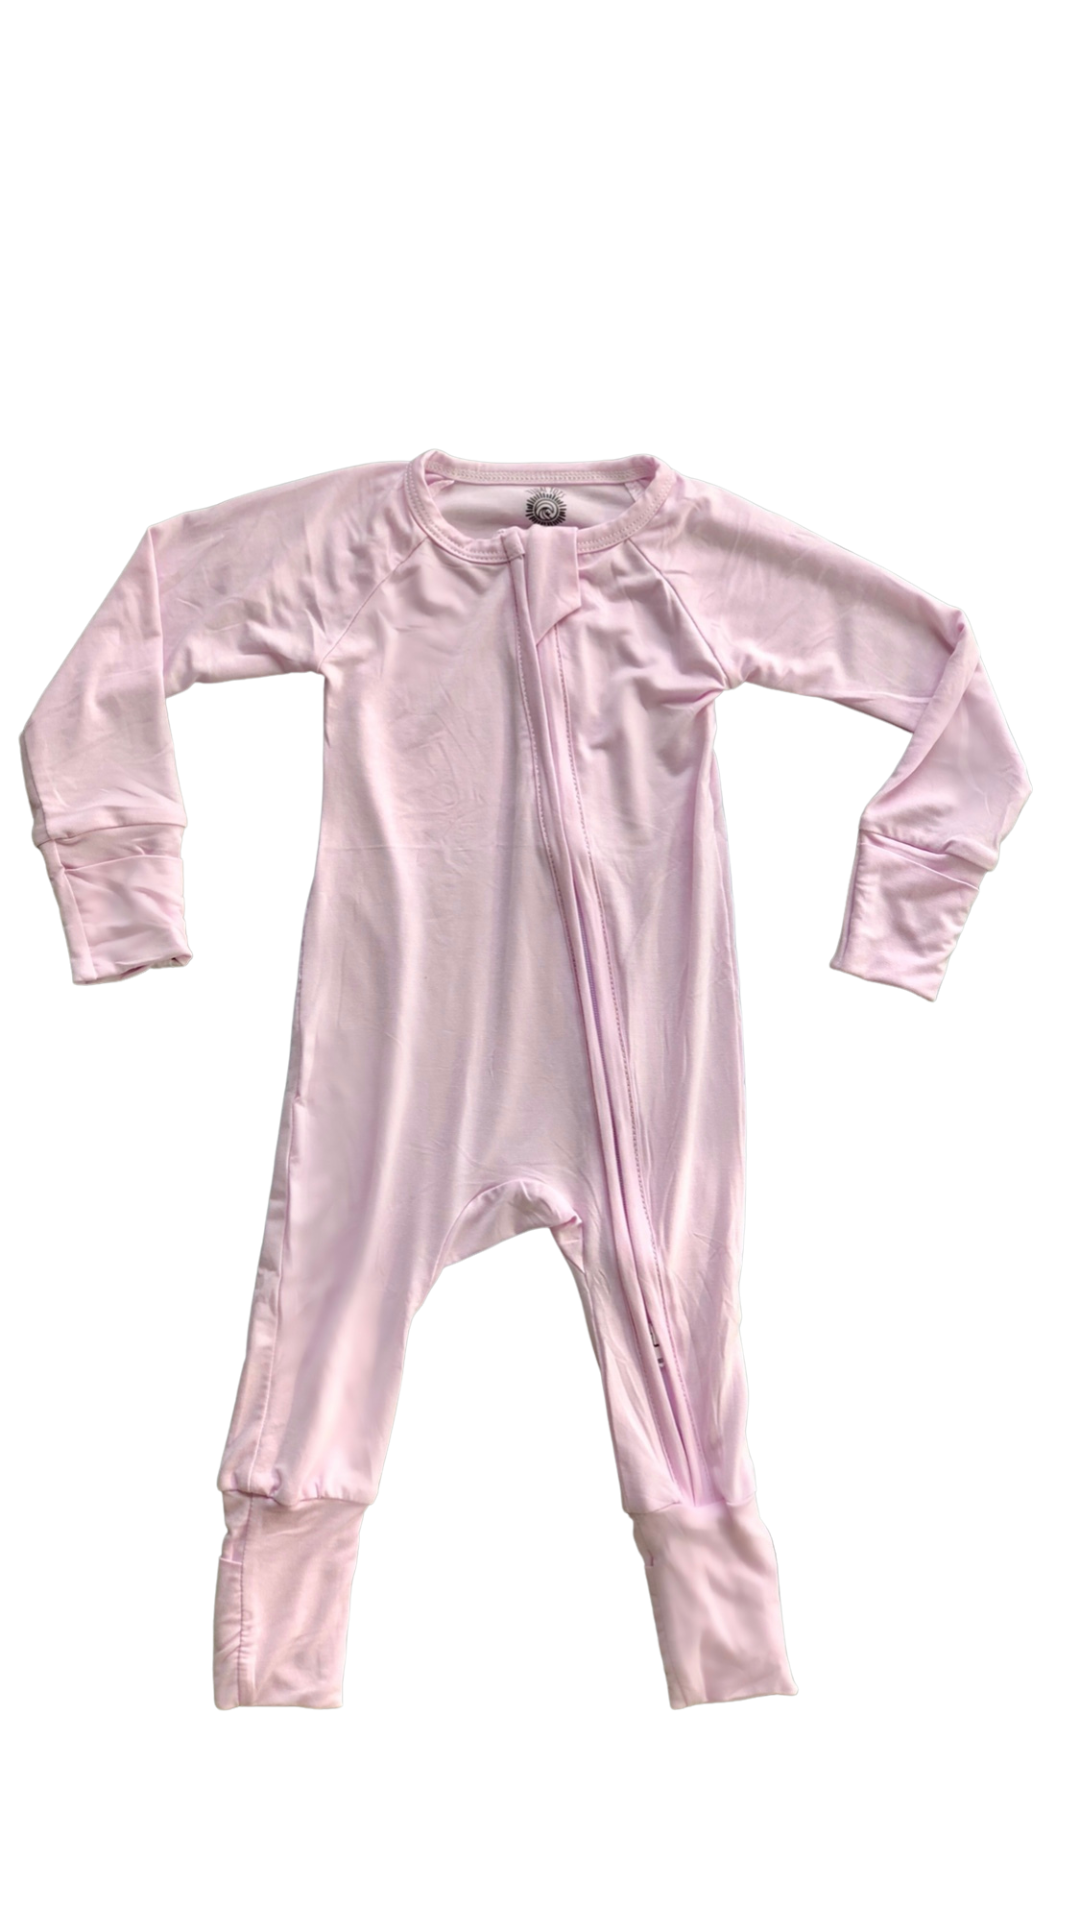 CTEEGC Womens Onesie Pajamas Heart Print Long Sleeve Sleep Homewear Zip Up  Jumpsuit Sleepwear Nightwear Footed Pajamas Pink : : Clothing,  Shoes & Accessories